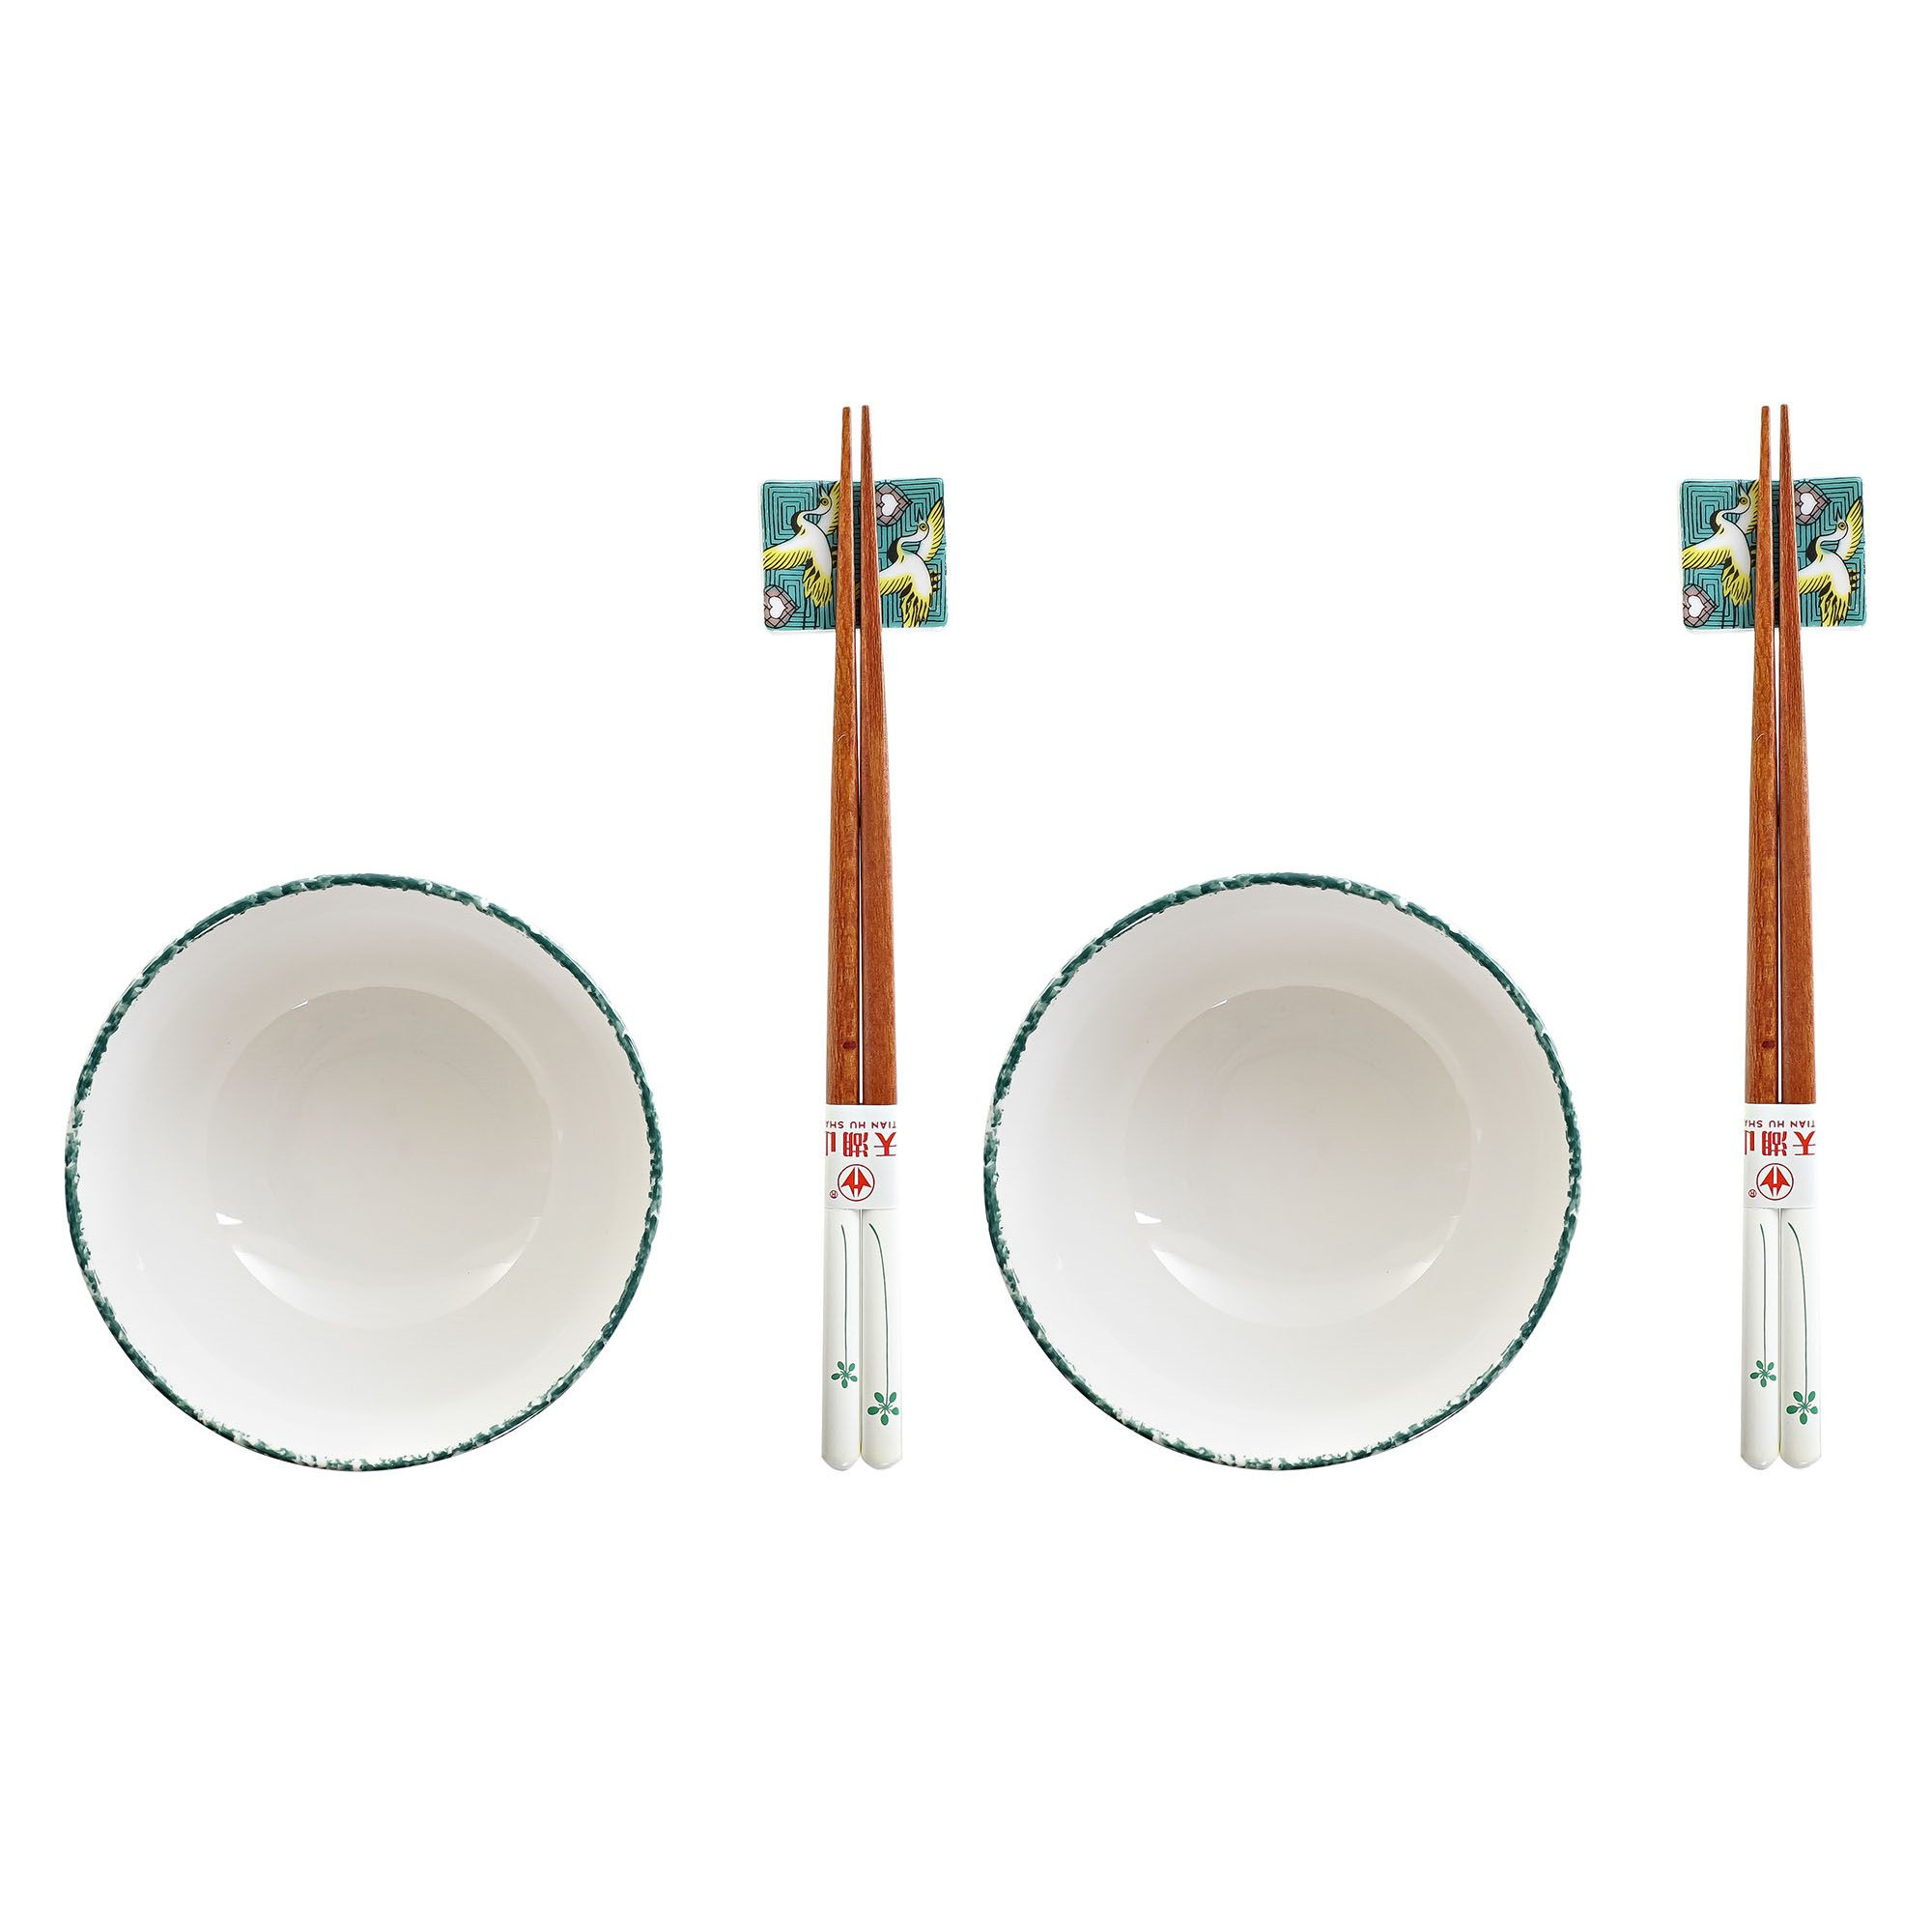 Items 6-delige sushi serveer set porselein voor 2 personen wit/groen -